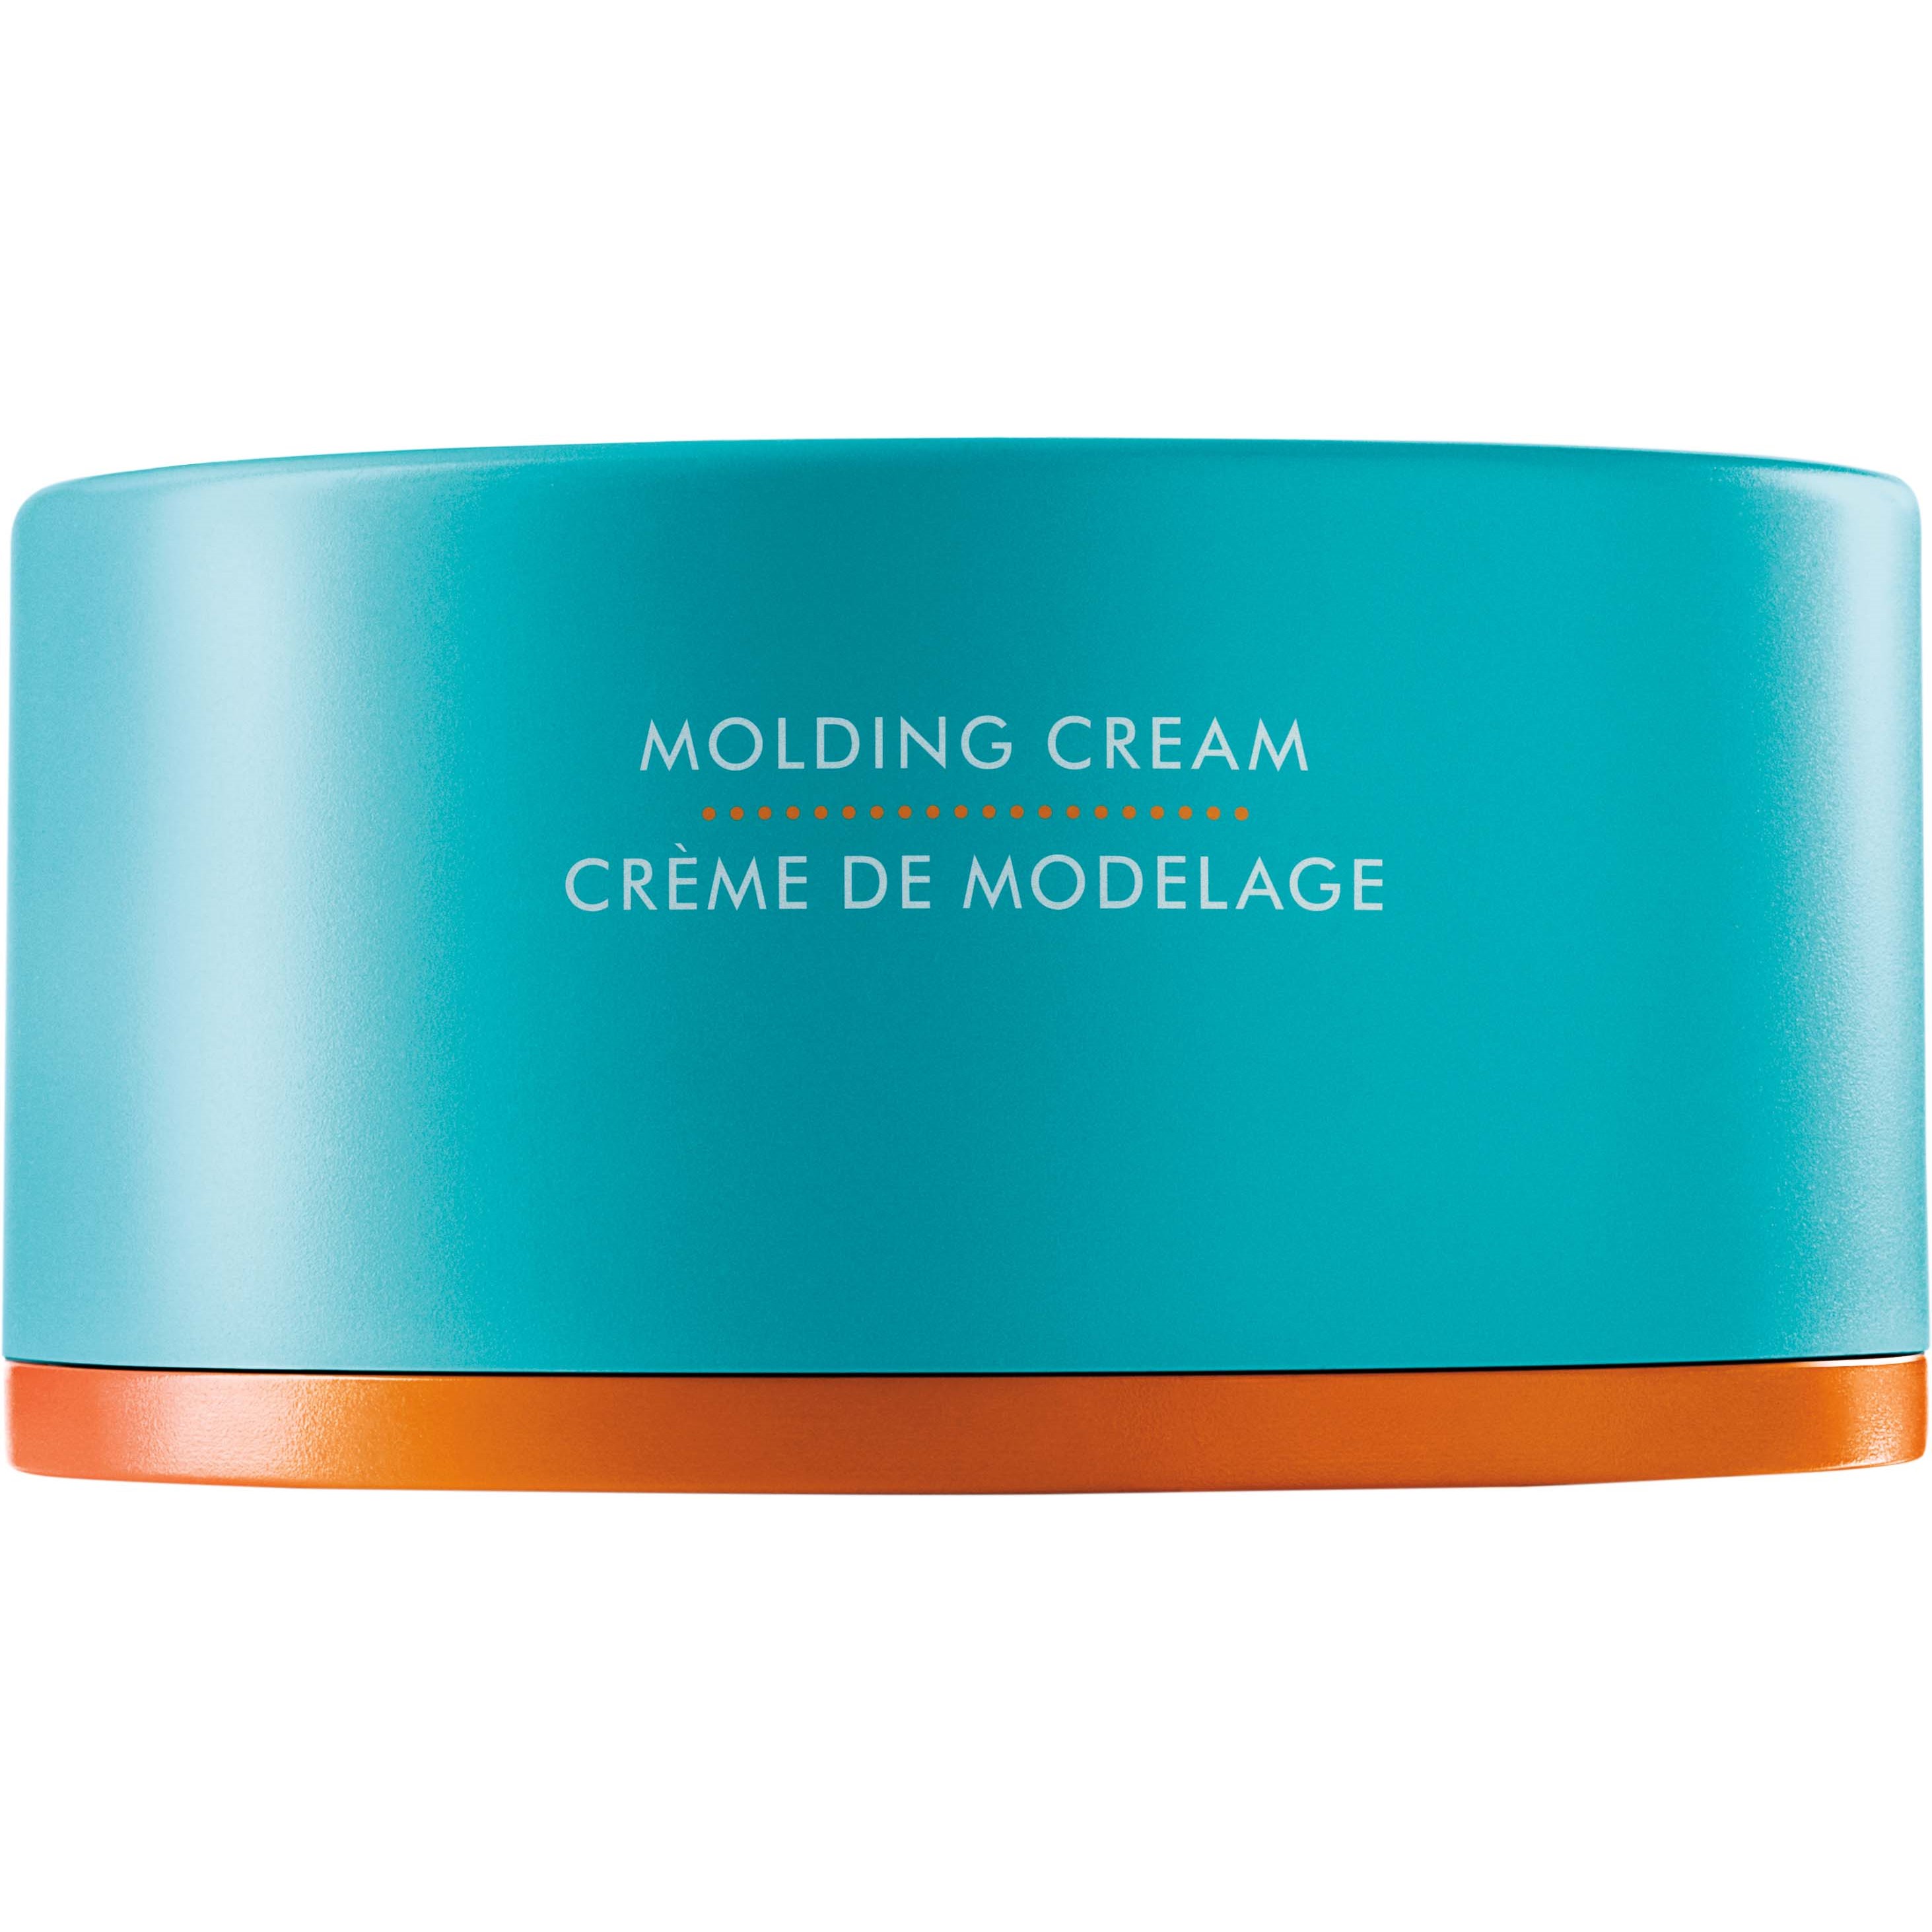 Moroccanoil Style Molding Cream 100 ml